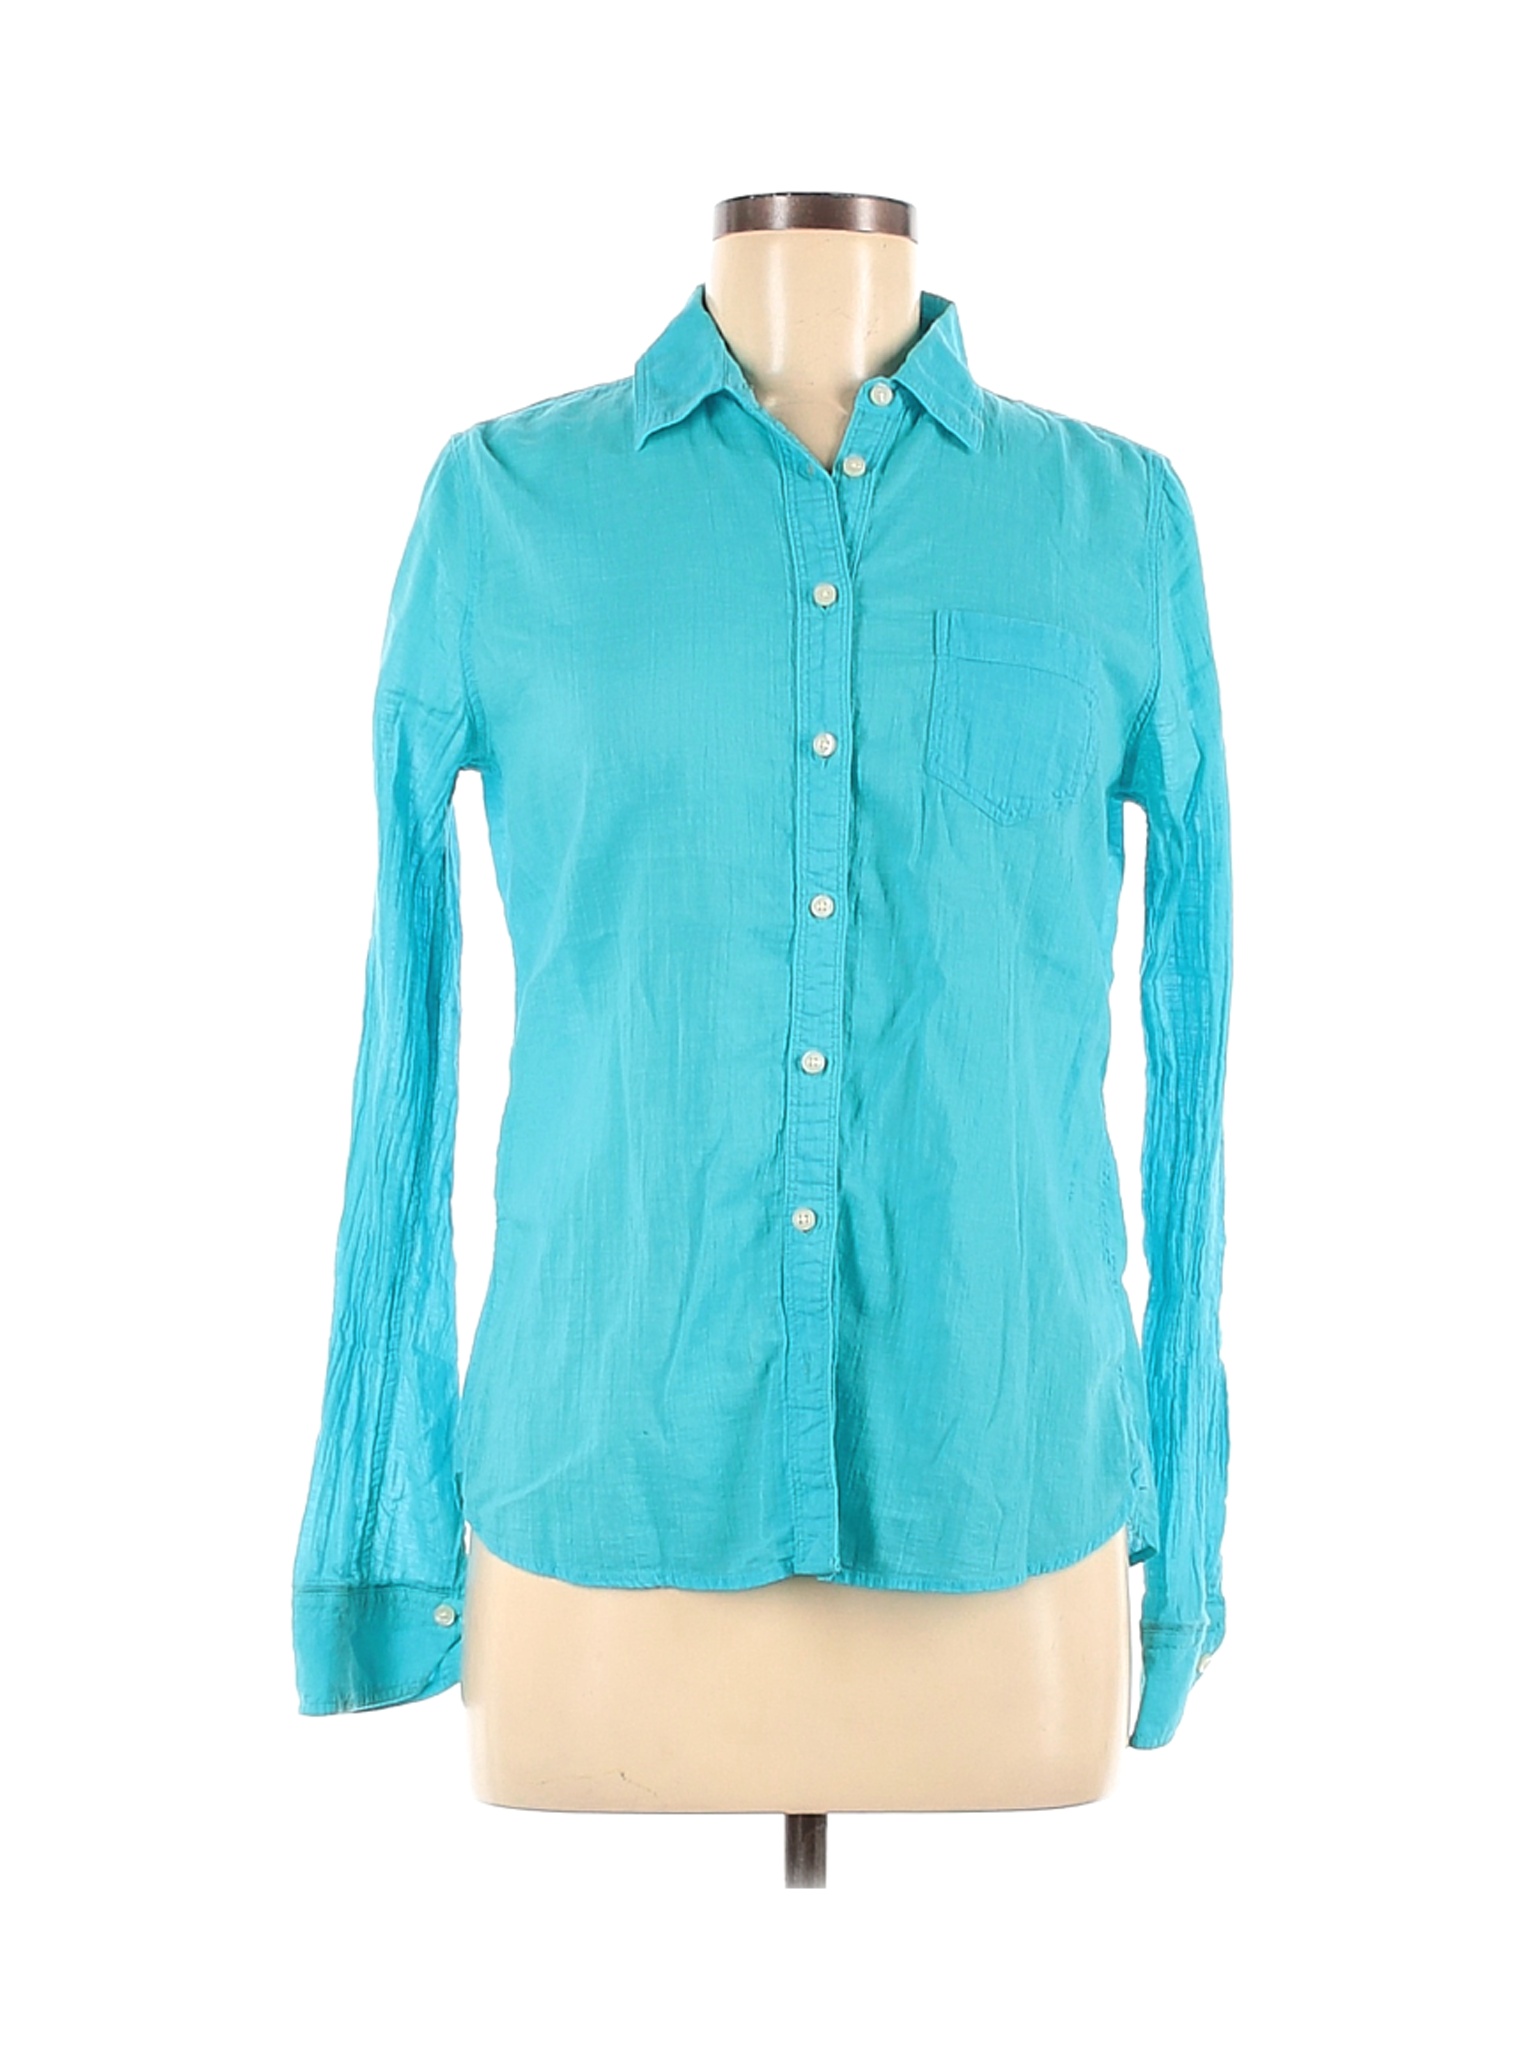 Jcpenney Women Blue Long Sleeve Button-Down Shirt M | eBay